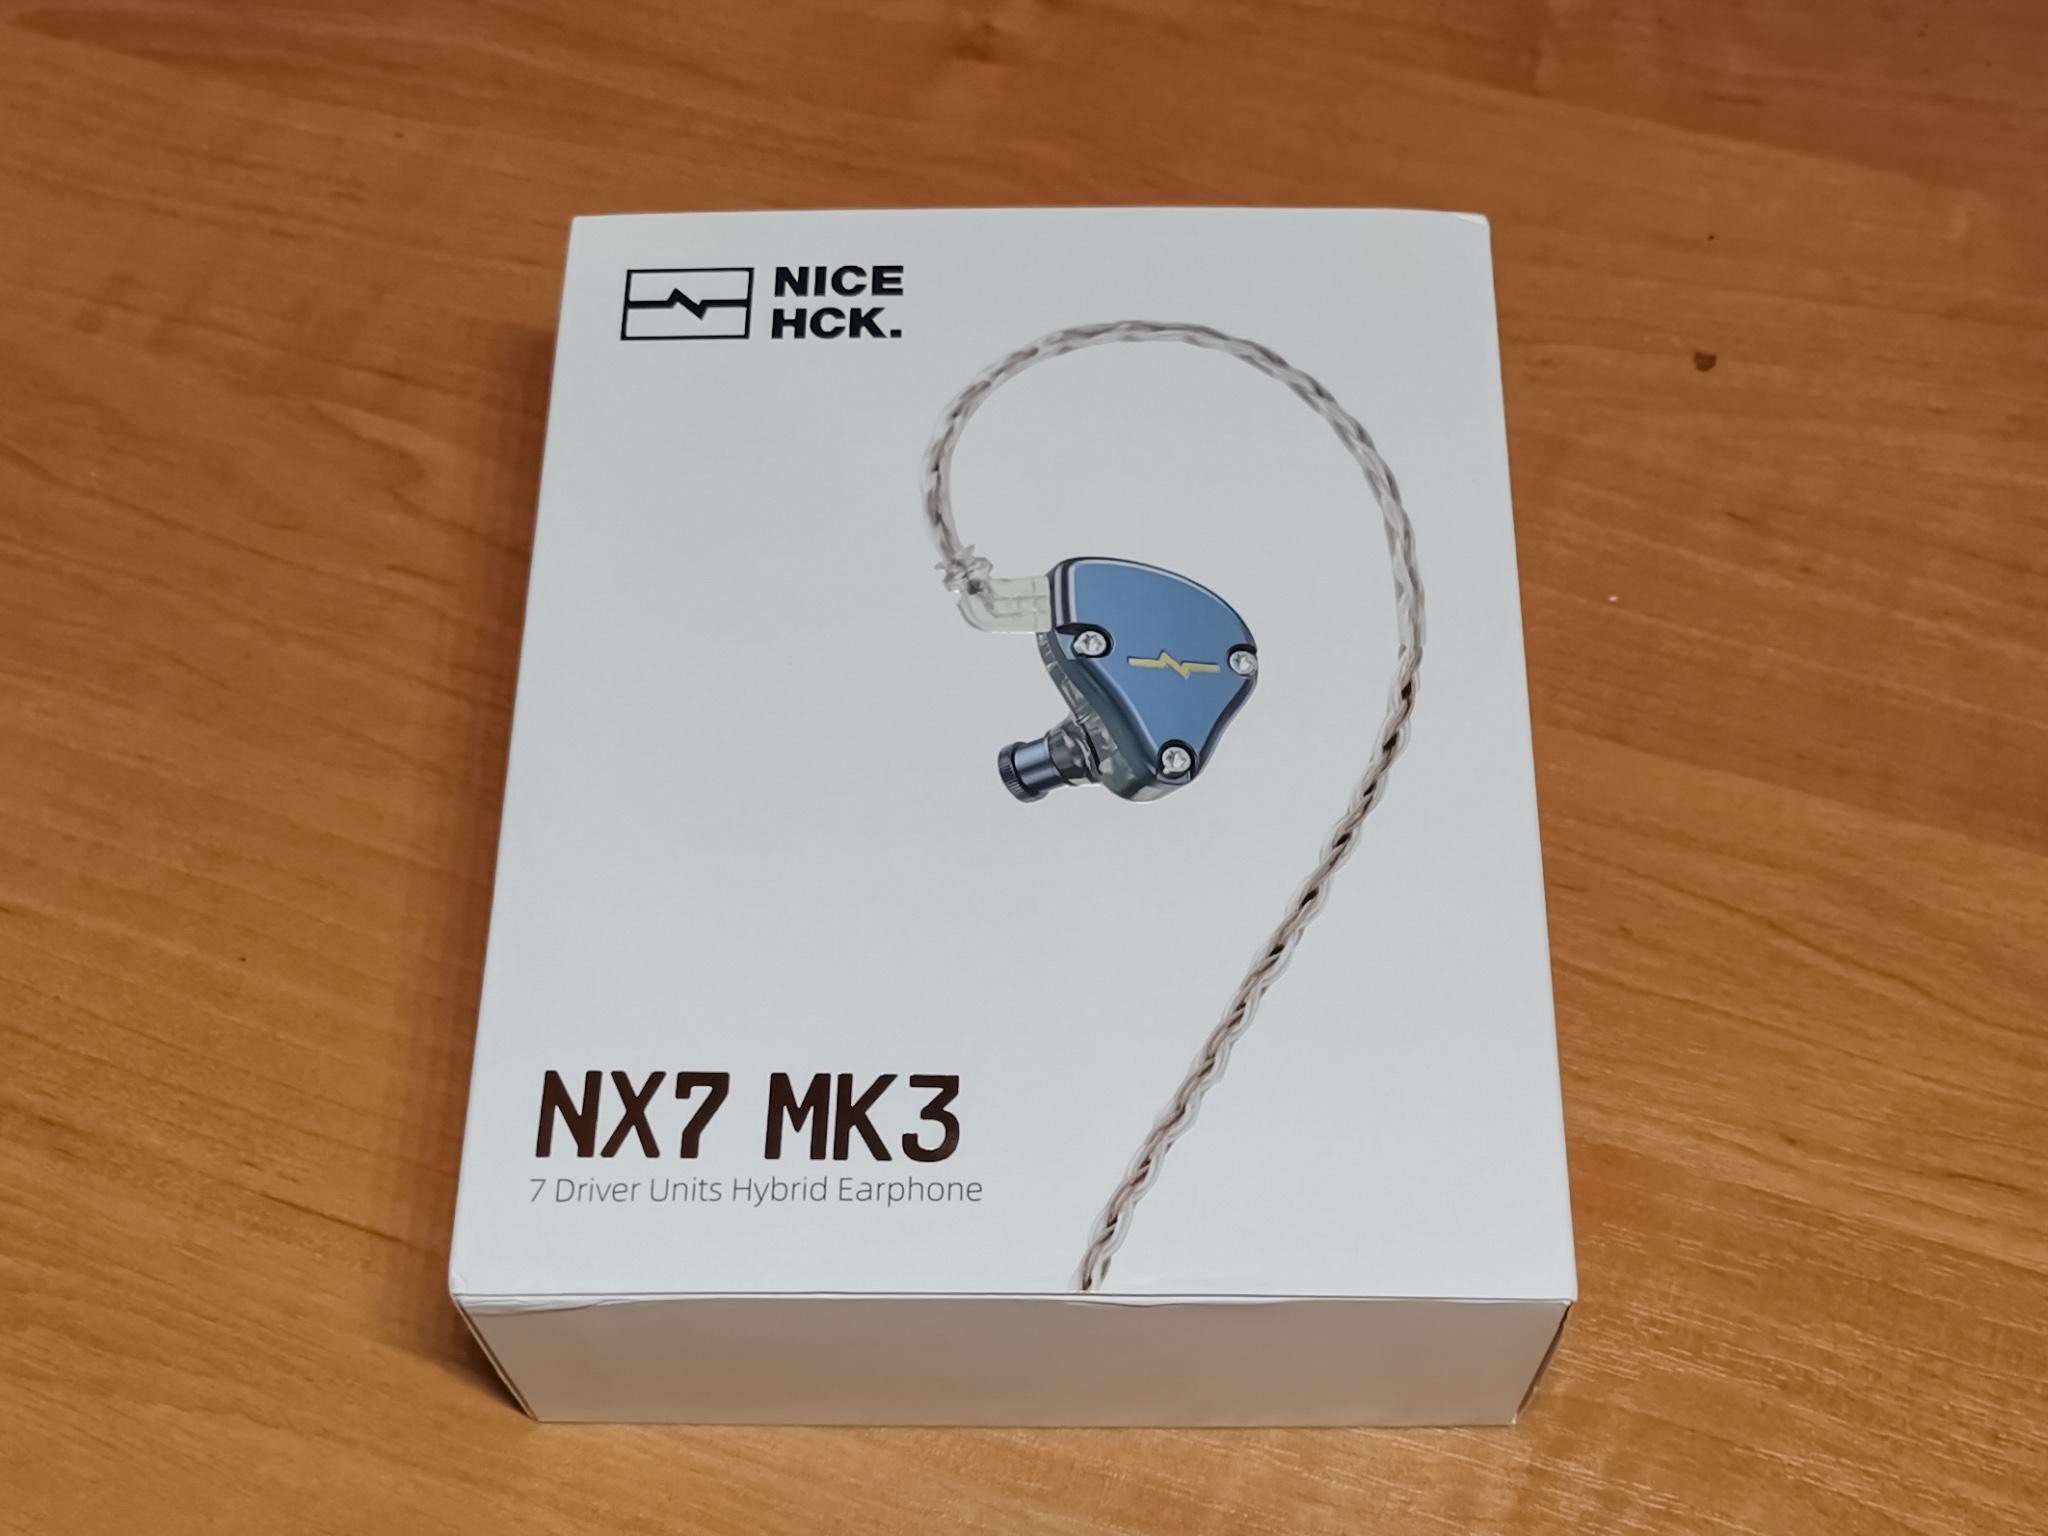 Nicehck nx7 mk4